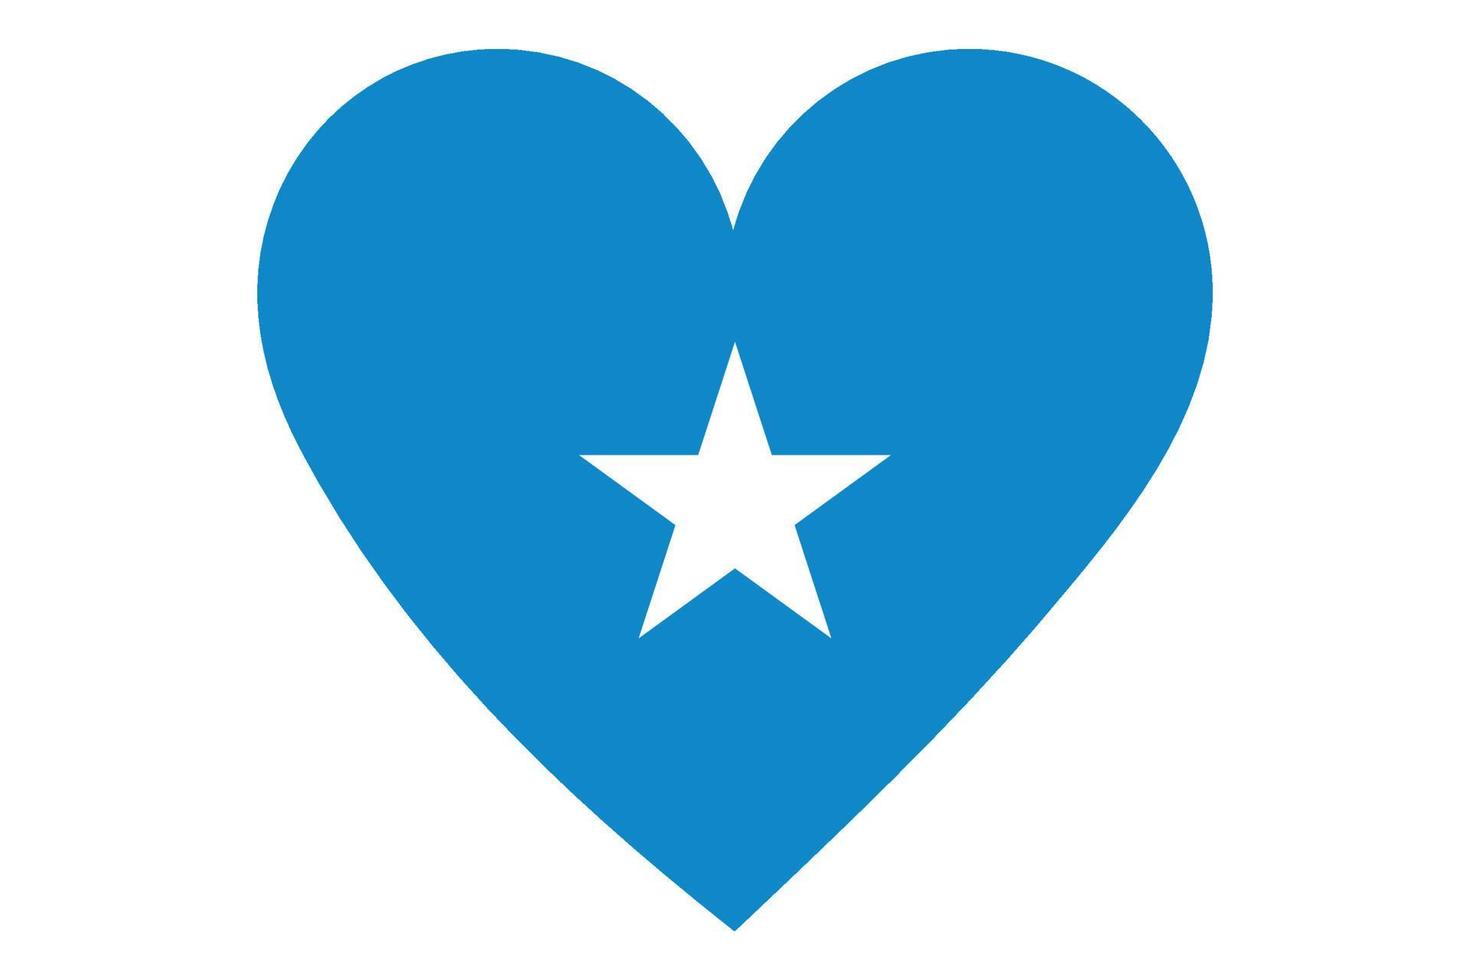 Heart flag vector of Somalia on white background.